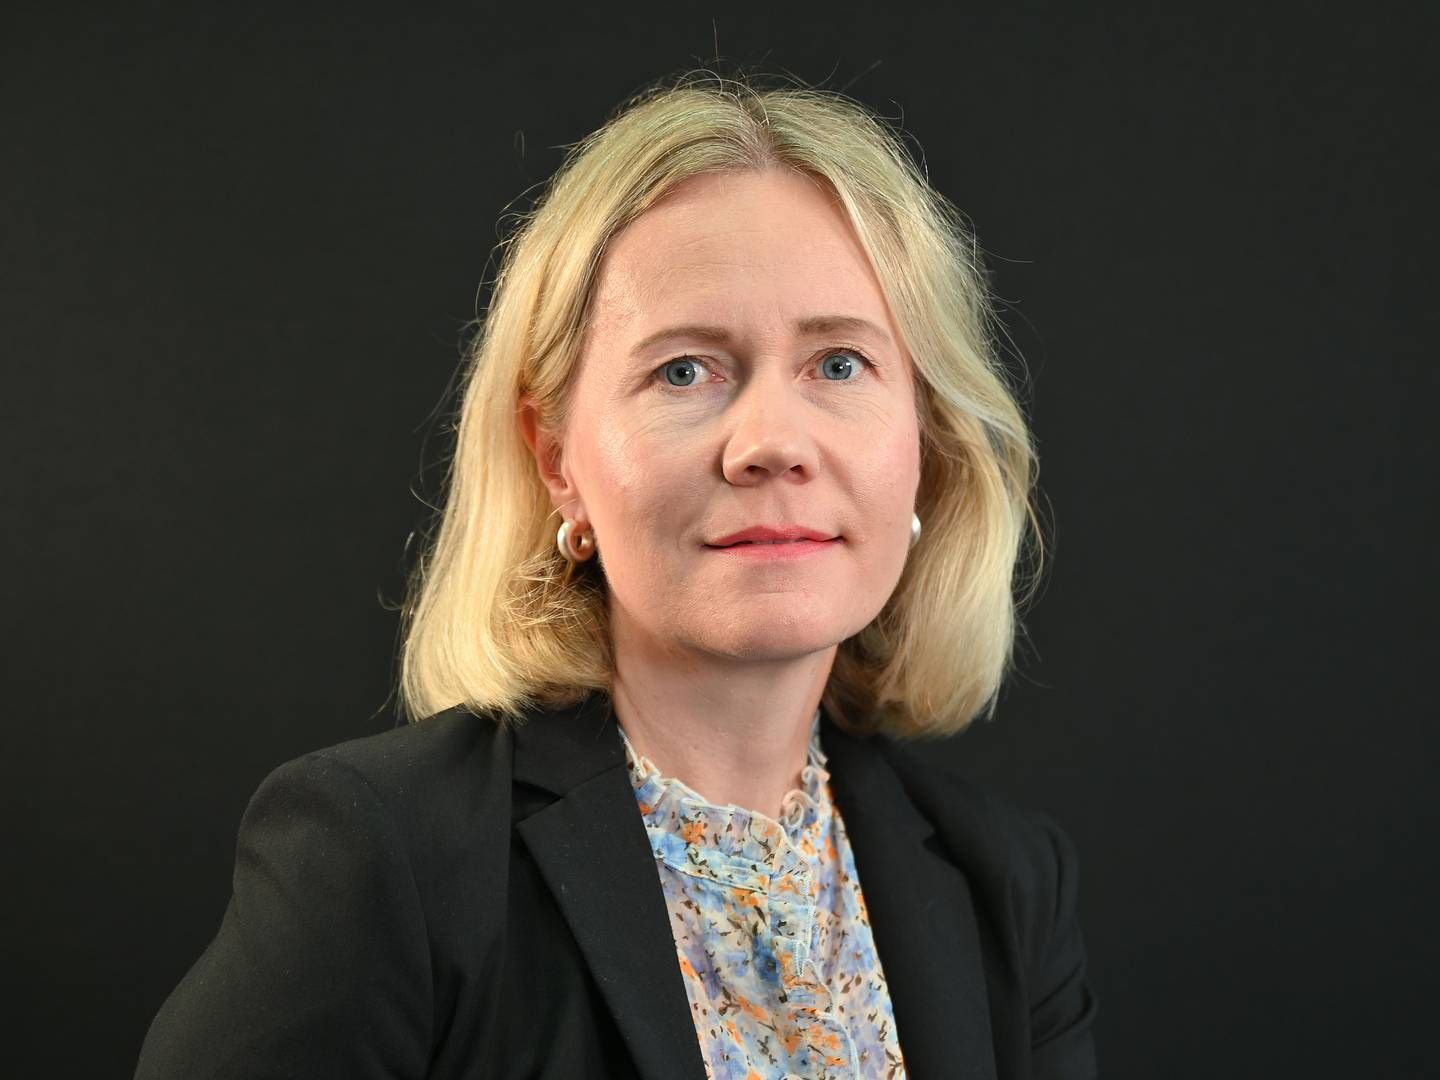 NY TOPPSJEF: Anne Nysæther blir ny toppsjef i nettselskapet Elvia. | Foto: Eidsiva